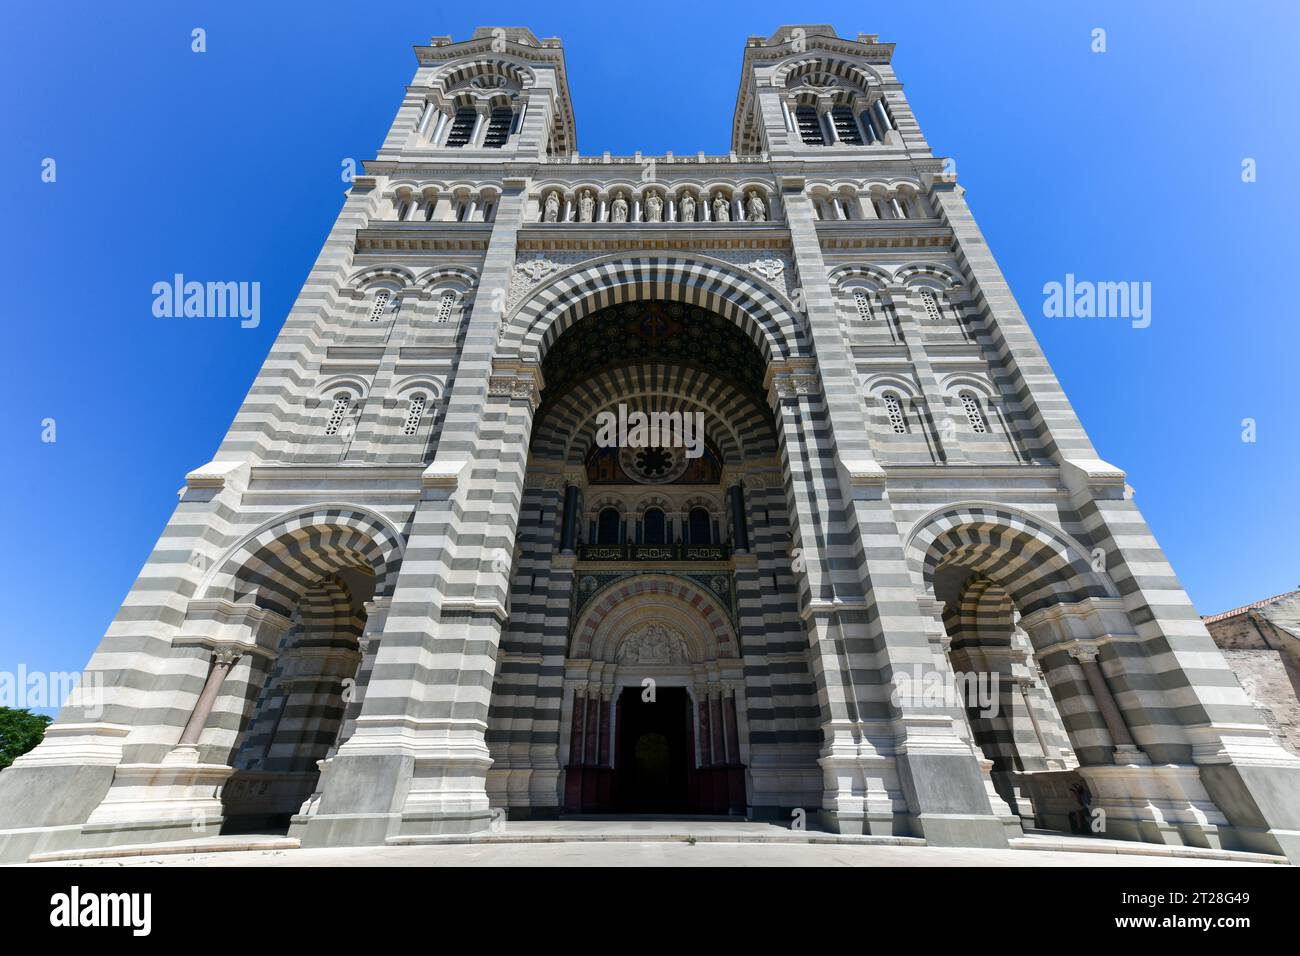 Cathedral de la Major - eine der wichtigsten Kirchen und Wahrzeichen in Marseille, Frankreich. Stockfoto